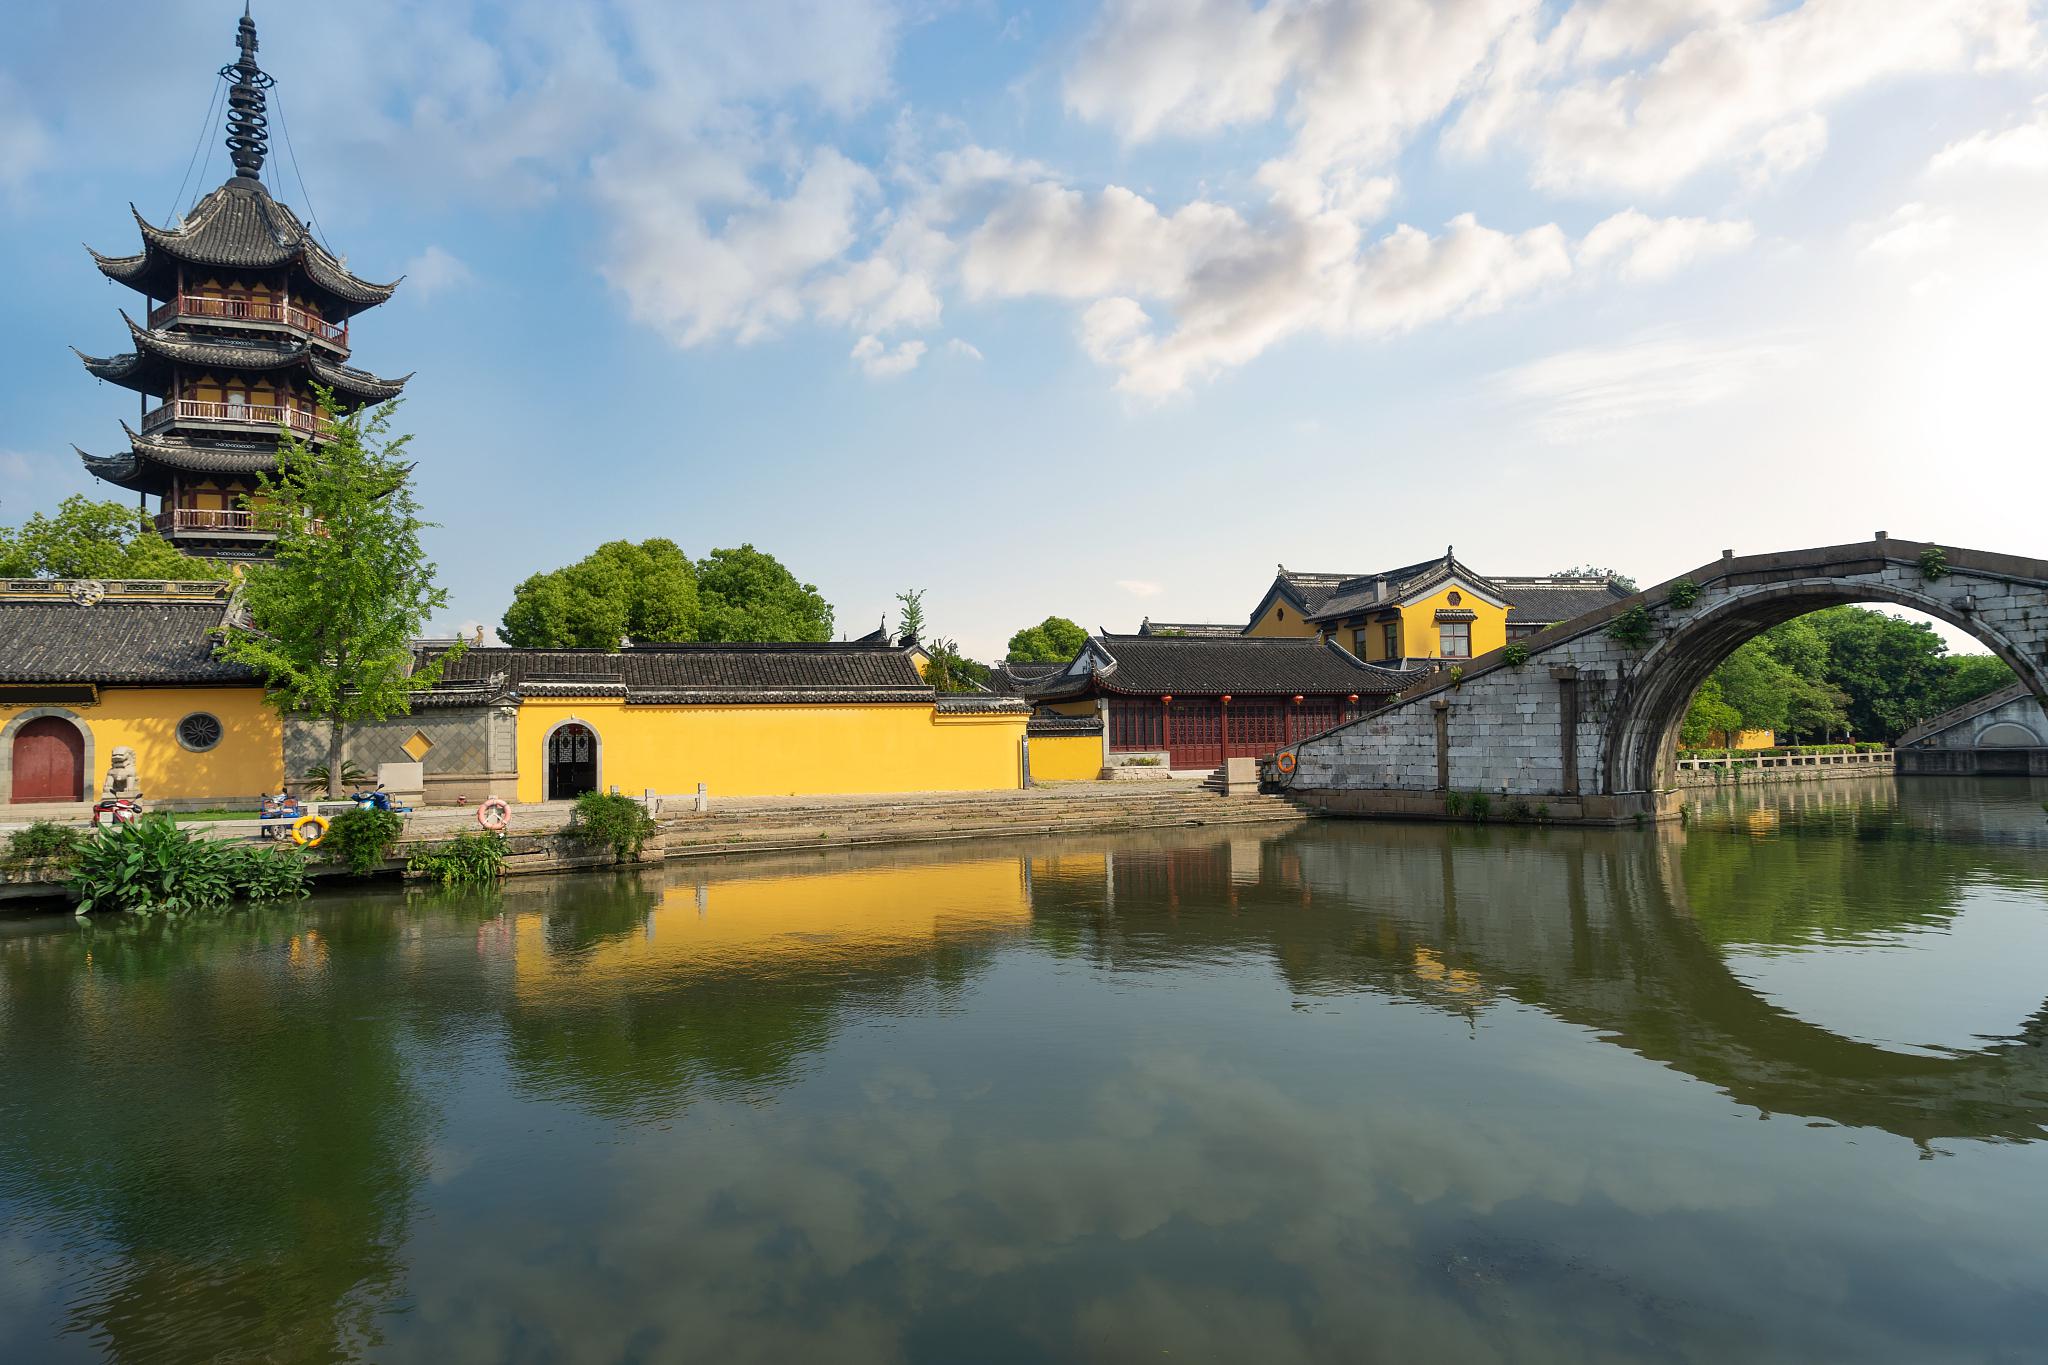 无锡旅游景点推荐 无锡,江苏省的一颗璀璨明珠,拥有众多历史悠久且